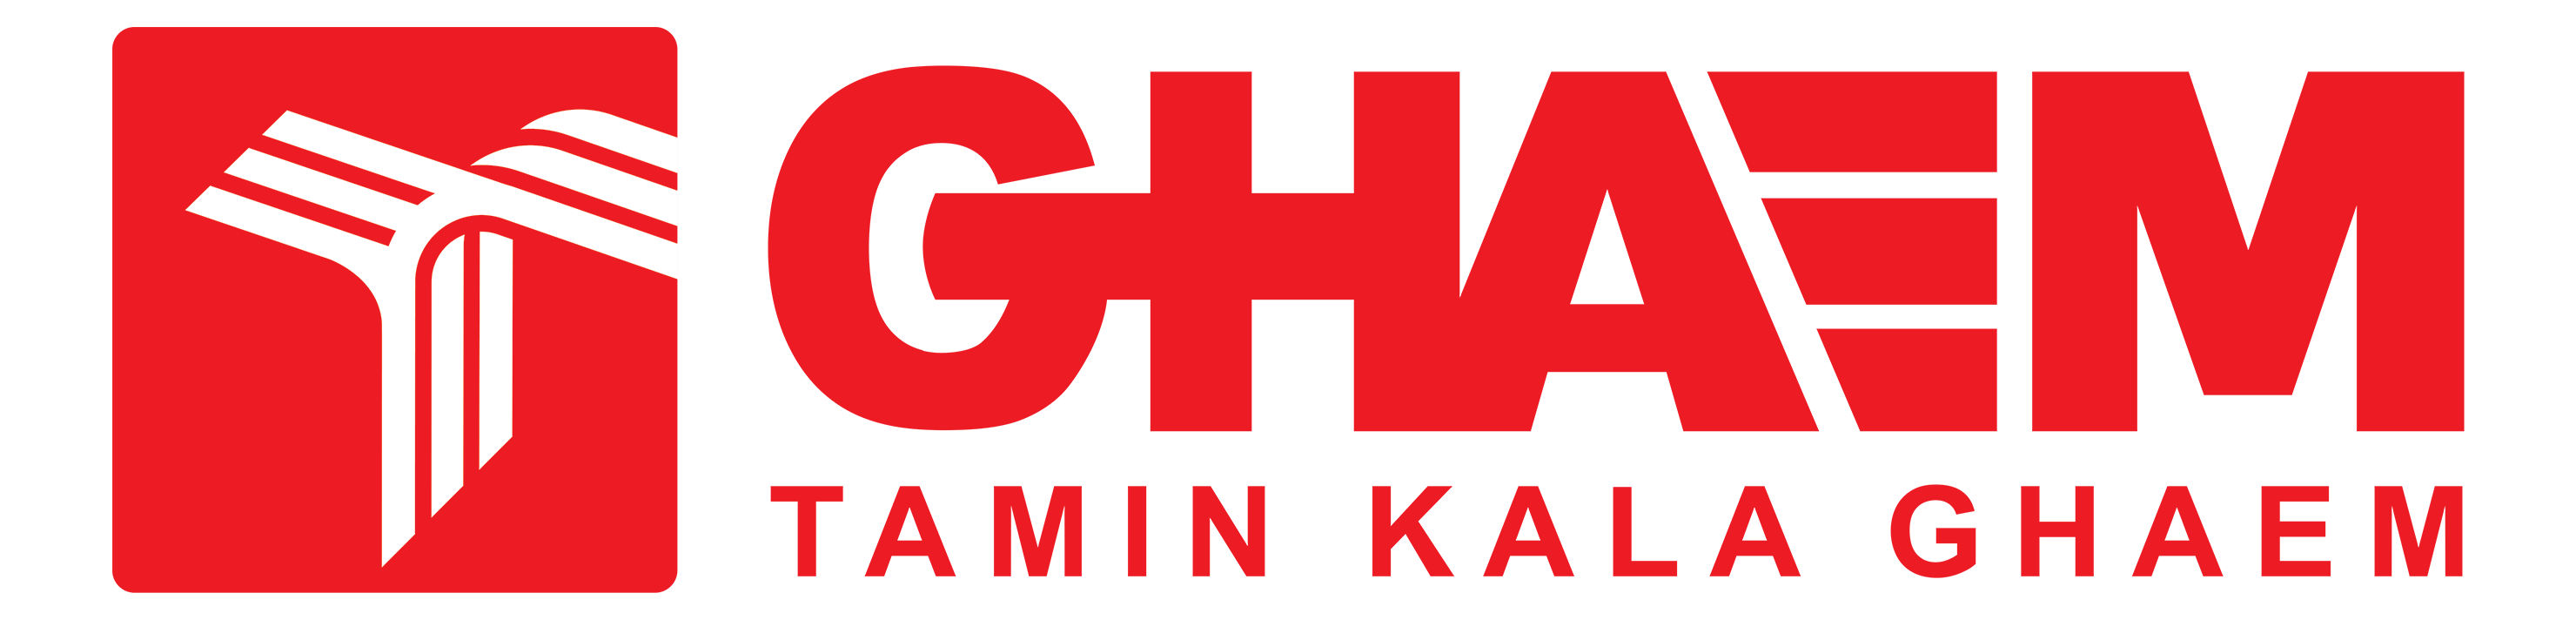 tamin kala ghaem logo 2021